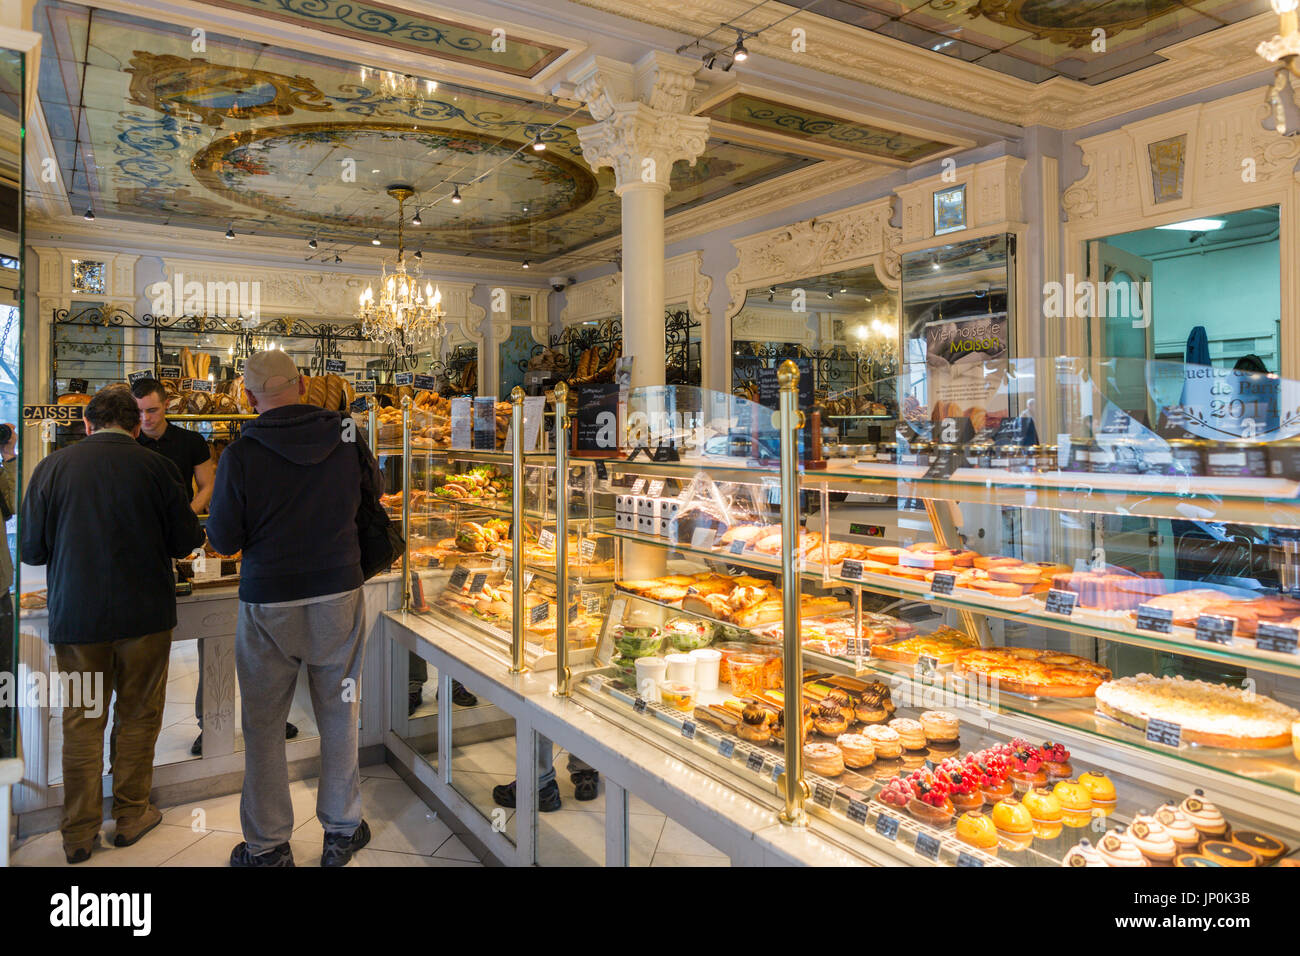 Paris, Frankreich - 2. März 2016: Einrichtung eines klassischen Paris Bäckerei und Brot Shop mit Menschen ihr tägliches Brot zu kaufen. Es gibt viele klassische Boulangerien und Patisserien in Paris mit schönen Vintage Dekor. Stockfoto